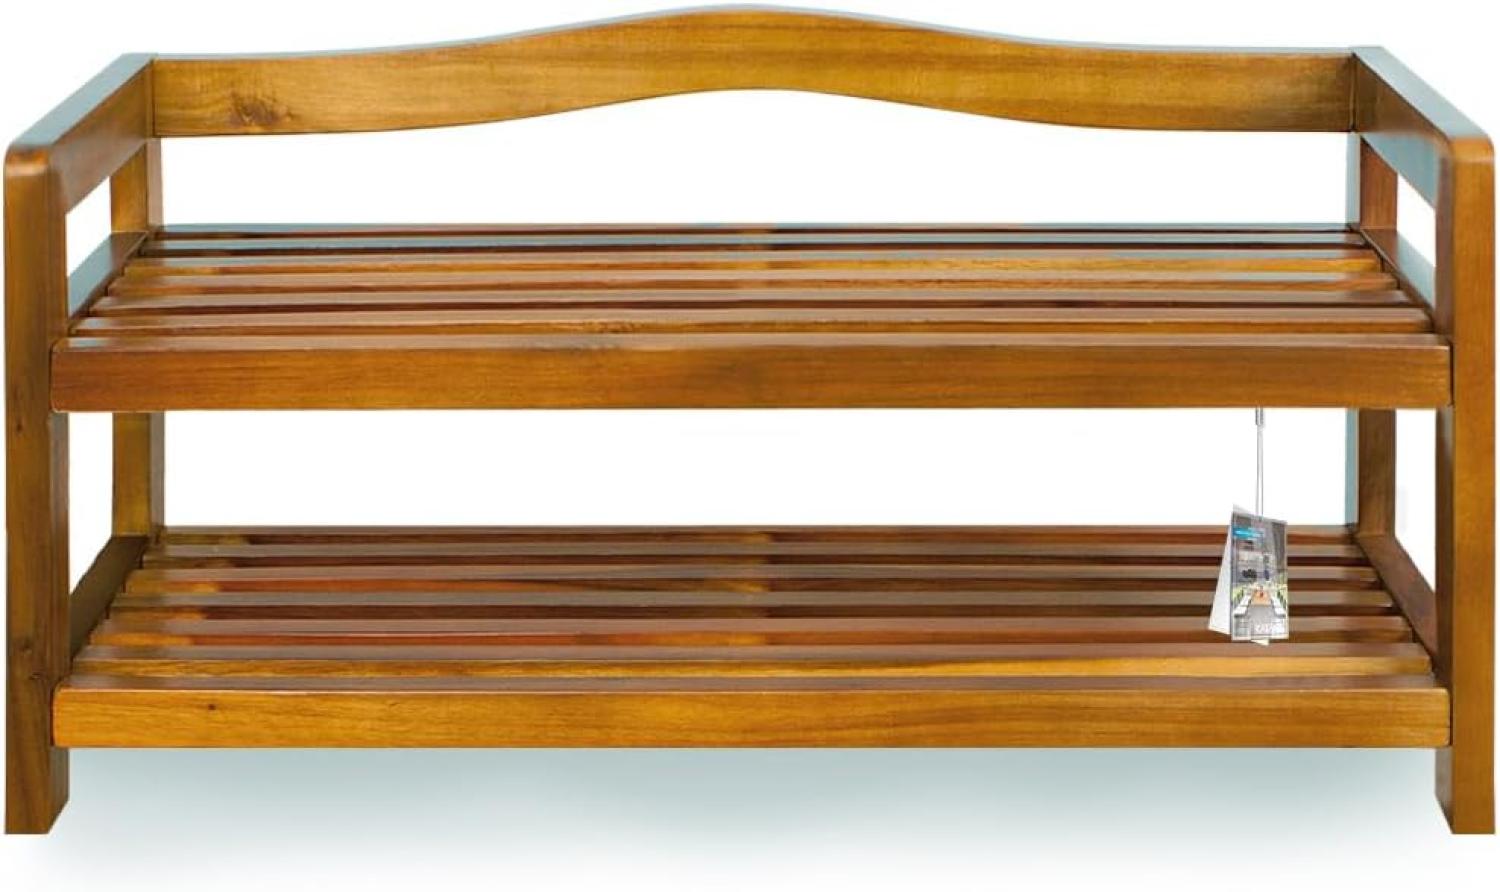 Casaria Schuhregal Schuhständer Holz Akazie 2 Etagen Bild 1